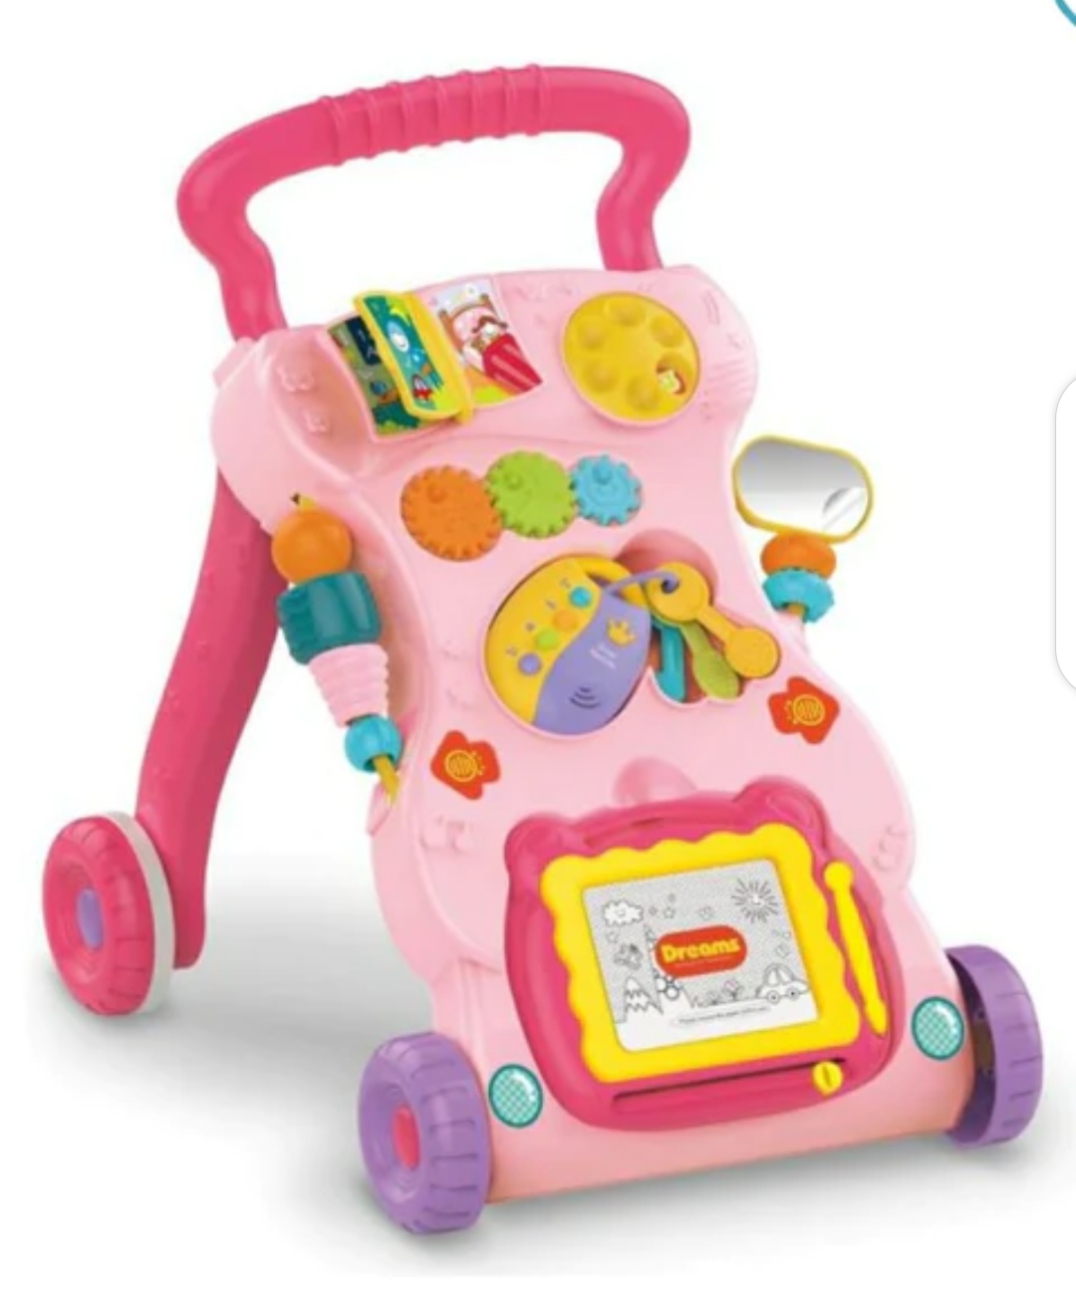 TROTTEUR MARCHEUR JOUETS ENFANTS  Un must have pour entraîner votre bébé à la marche, et avec des jouets votre loulou va jouer manipuler reconnaître les formes et couleurs. Un jouet qui développe les capacités sensori moteurs.
